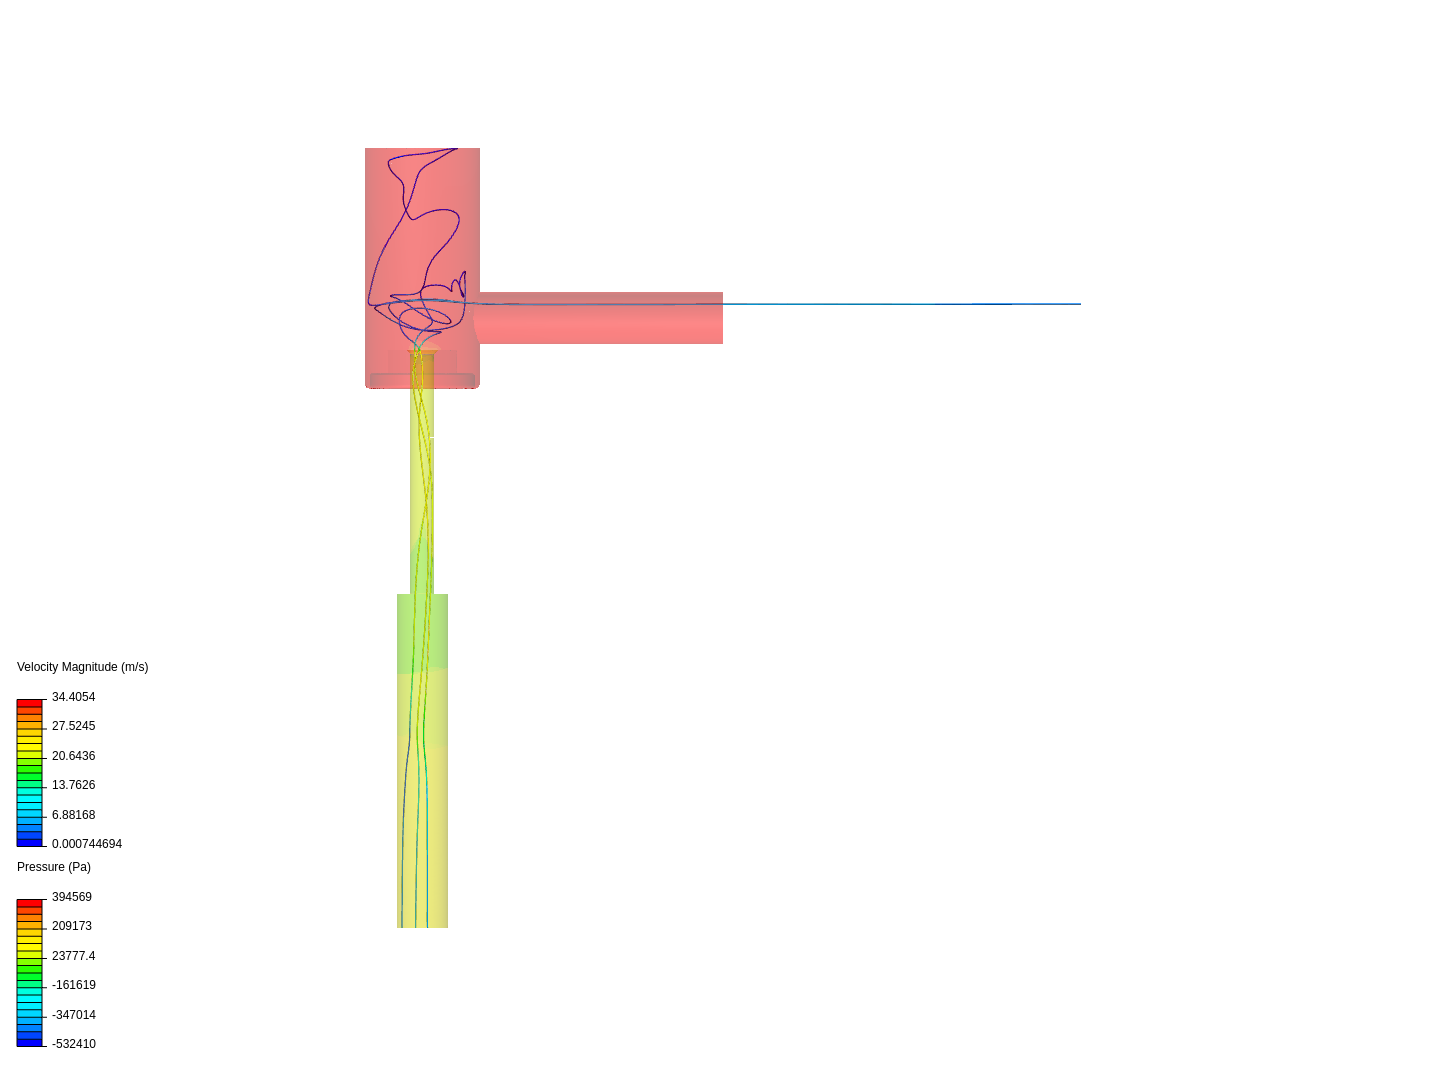 Choke valve flow sim 2 image